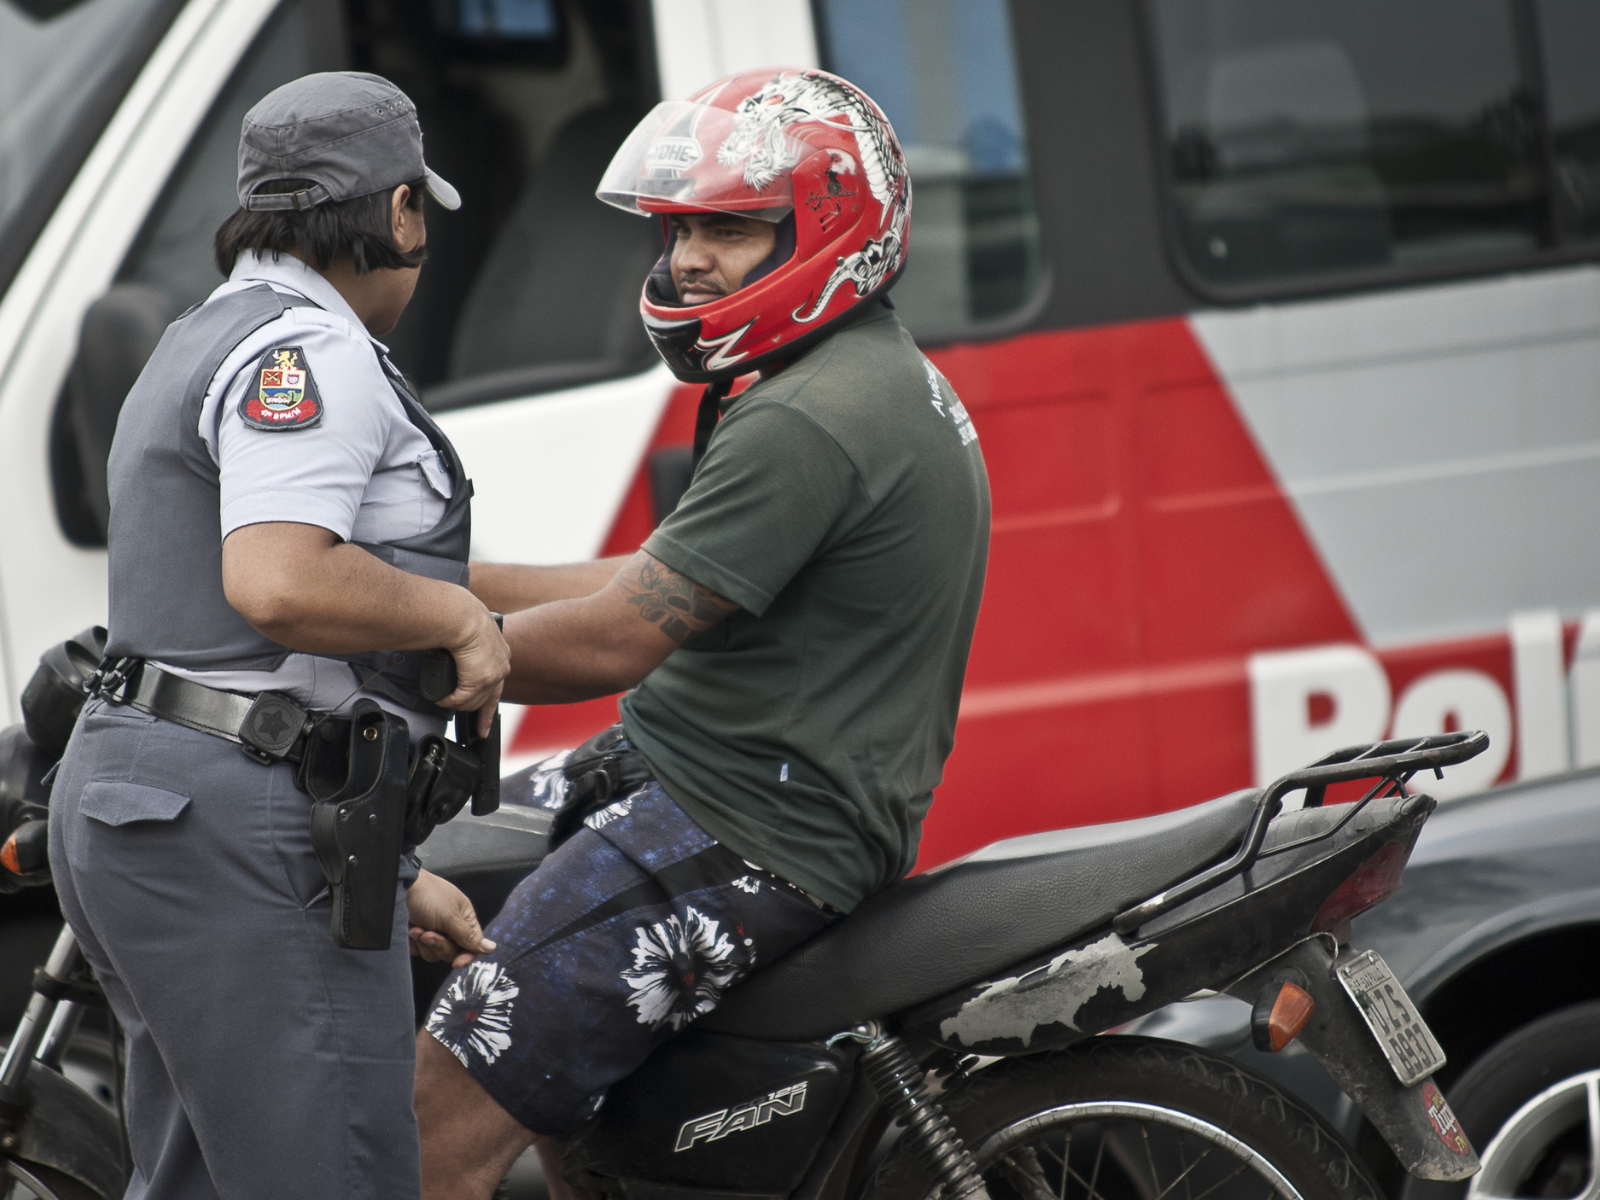 Moto é roubada duas vezes no mesmo dia em São Paulo